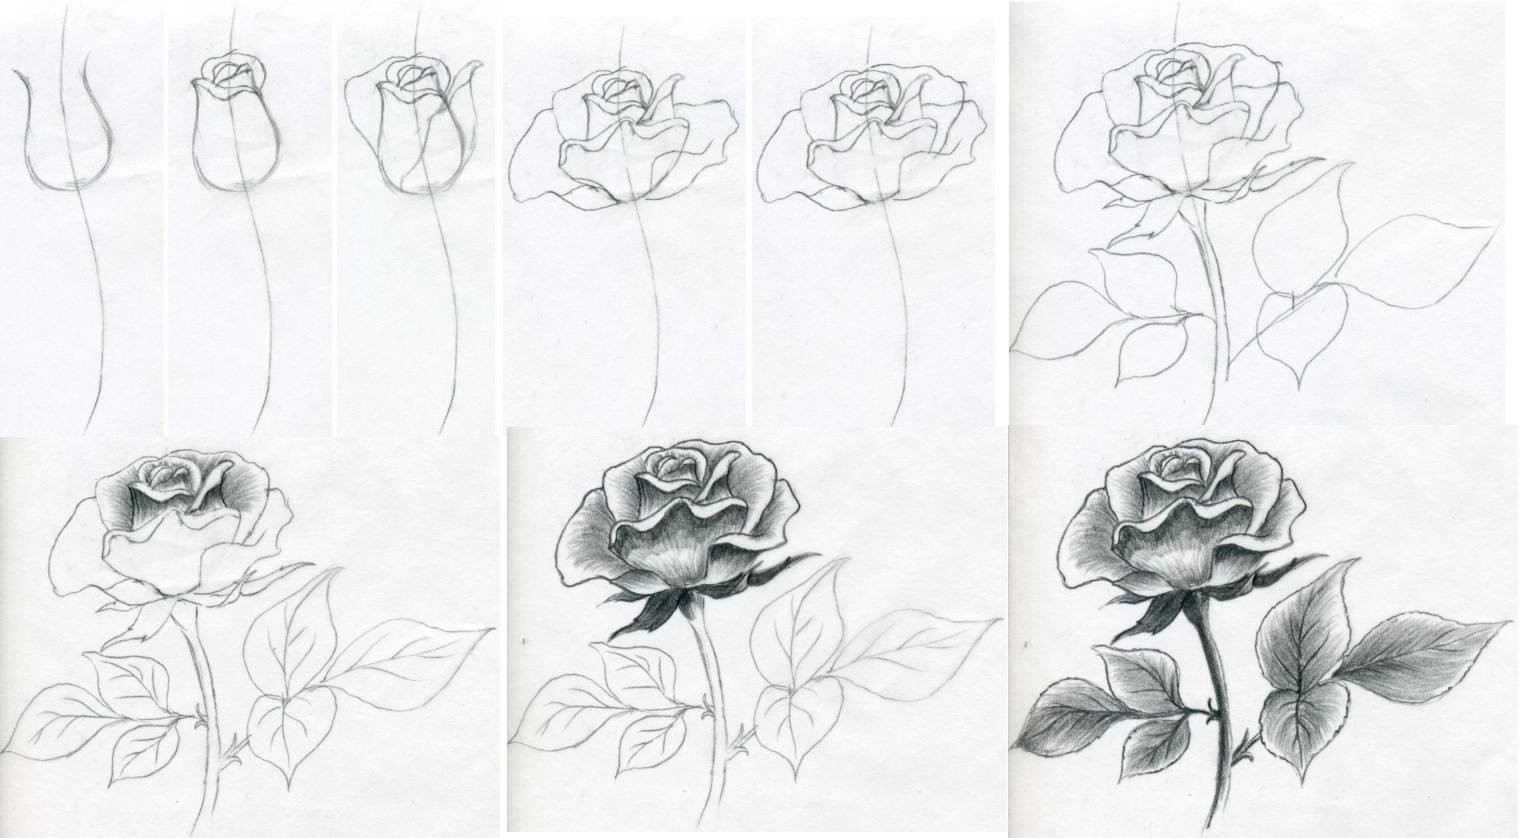 Схема рисования розы карандашом